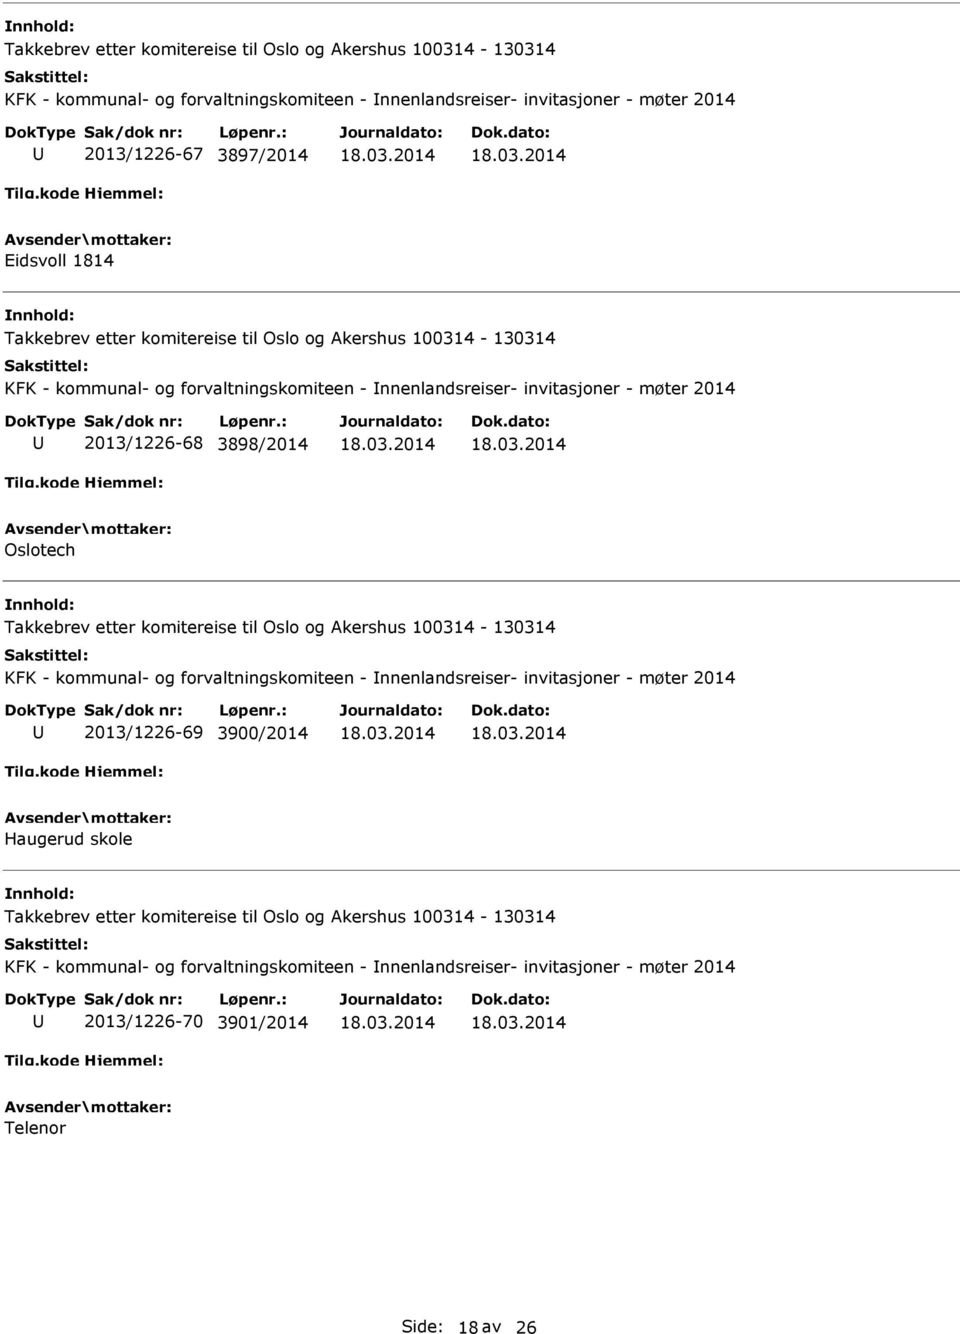 kommunal- og forvaltningskomiteen - nnenlandsreiser- invitasjoner - møter 2014 2013/1226-69 3900/2014 Haugerud skole KFK -